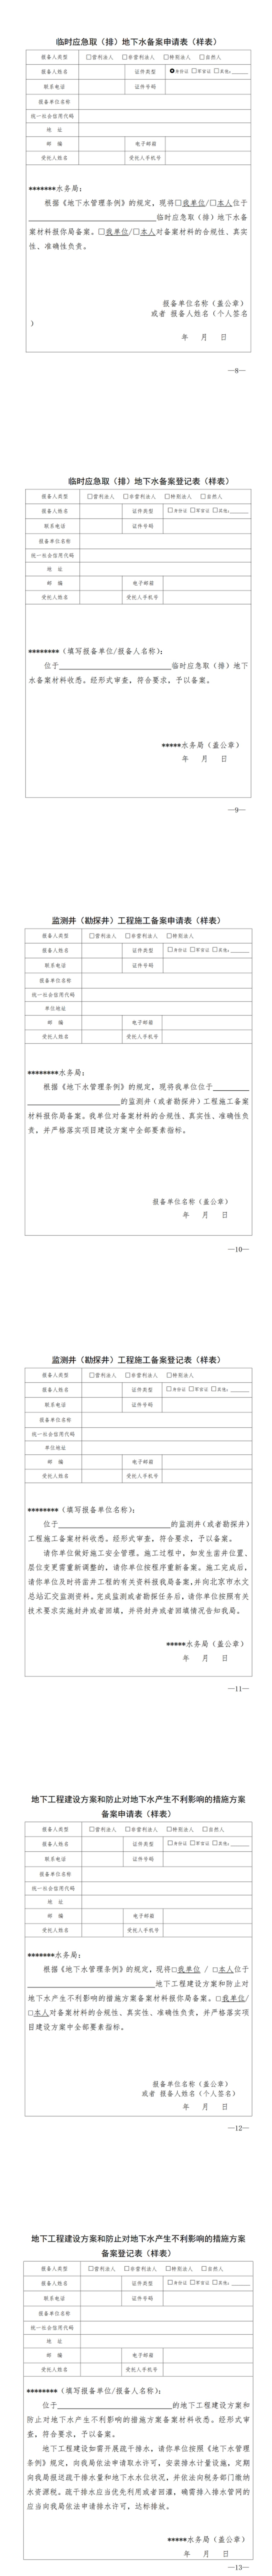 北京市水务局关于印发《北京市临时应急取（排）地下水等备案事项管理办法（试行）》的通知